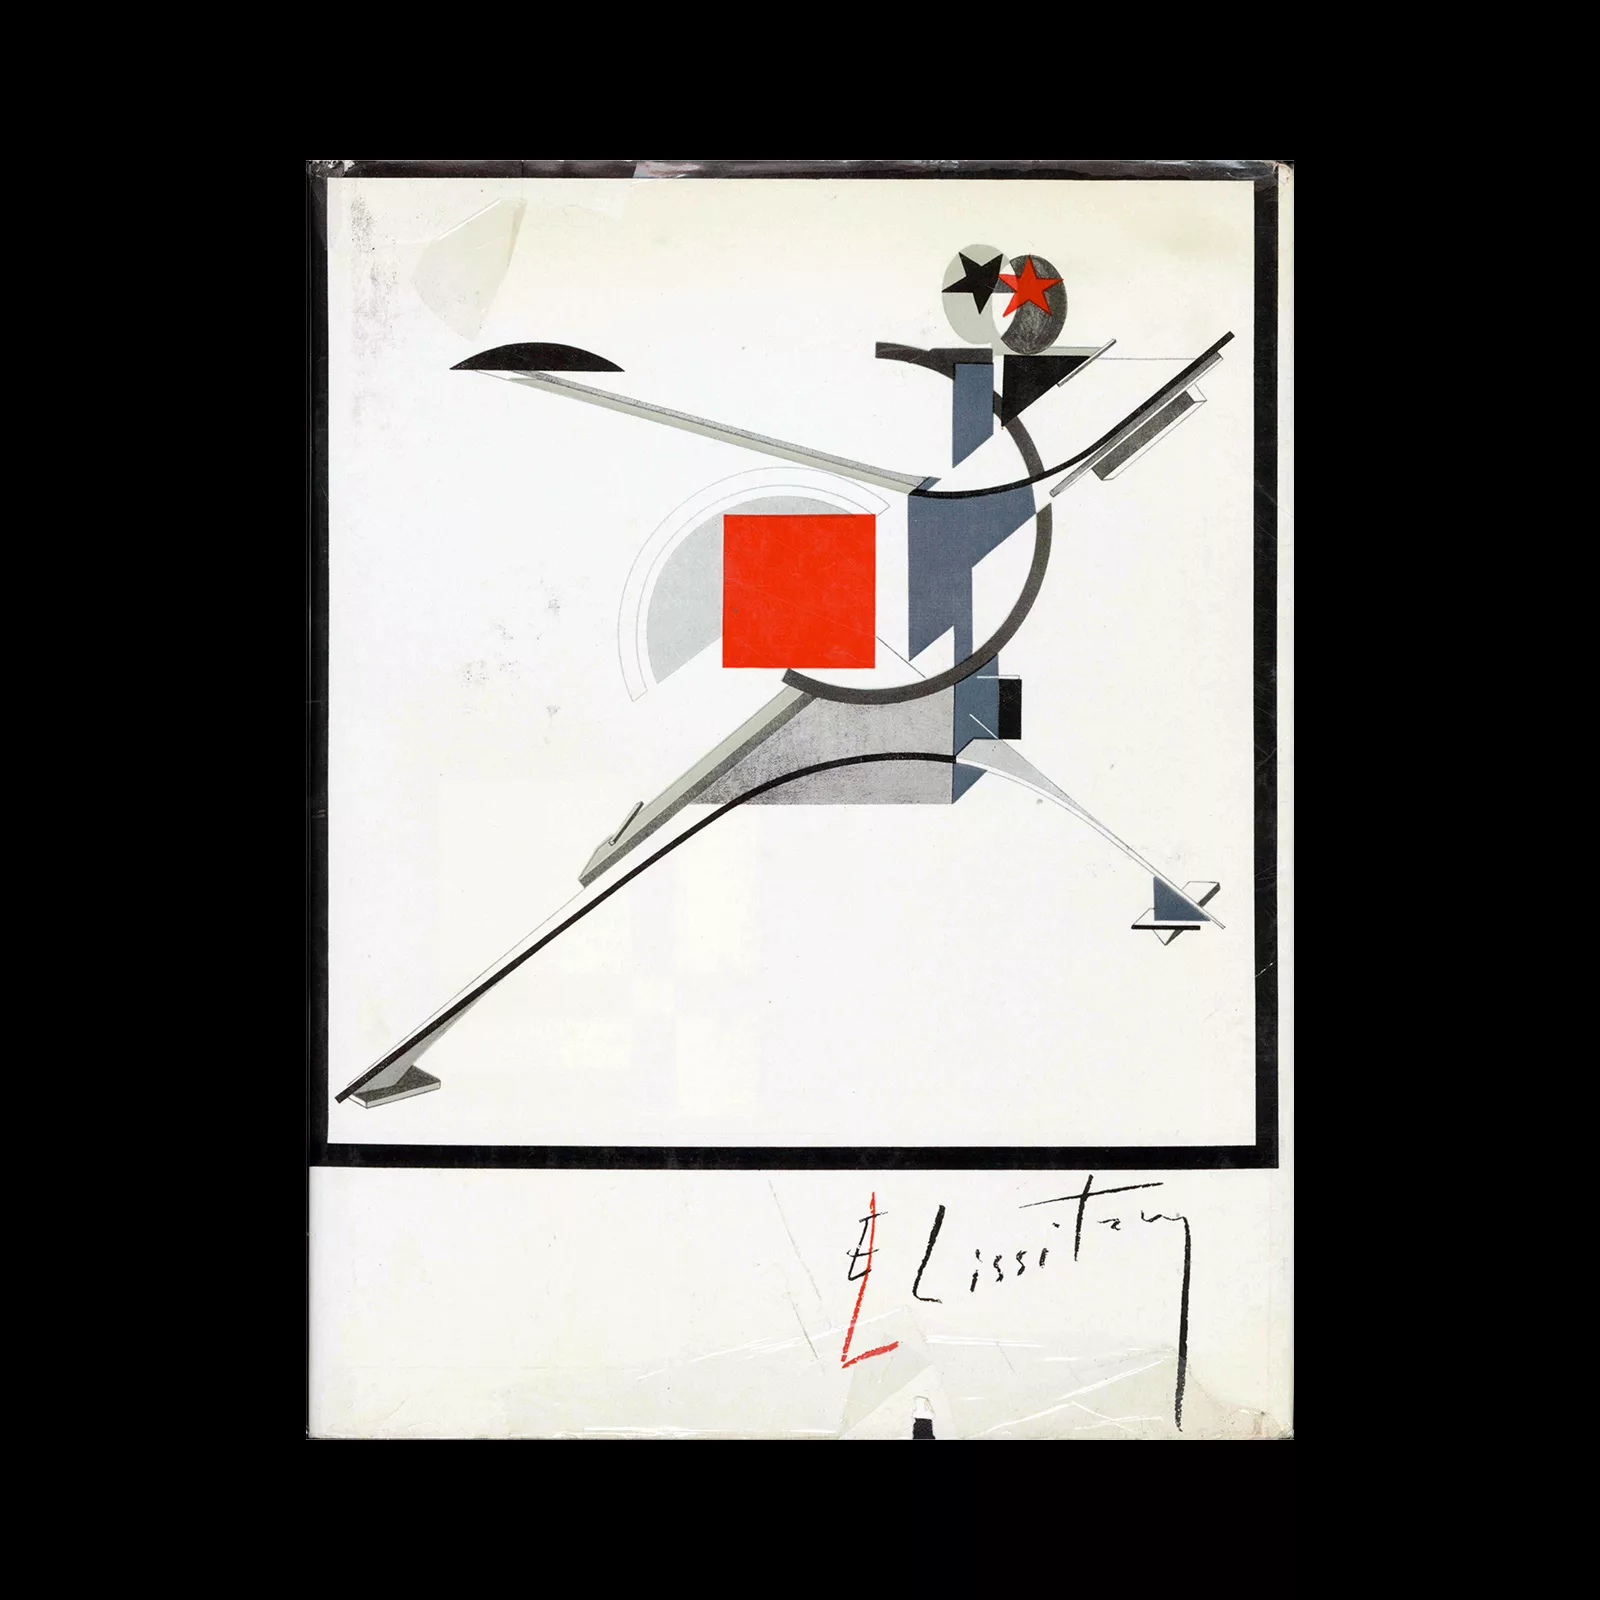 El Lissitzky - Maler Architect Typograf Fotograf, Veb Verlag Der Kunst, 1976